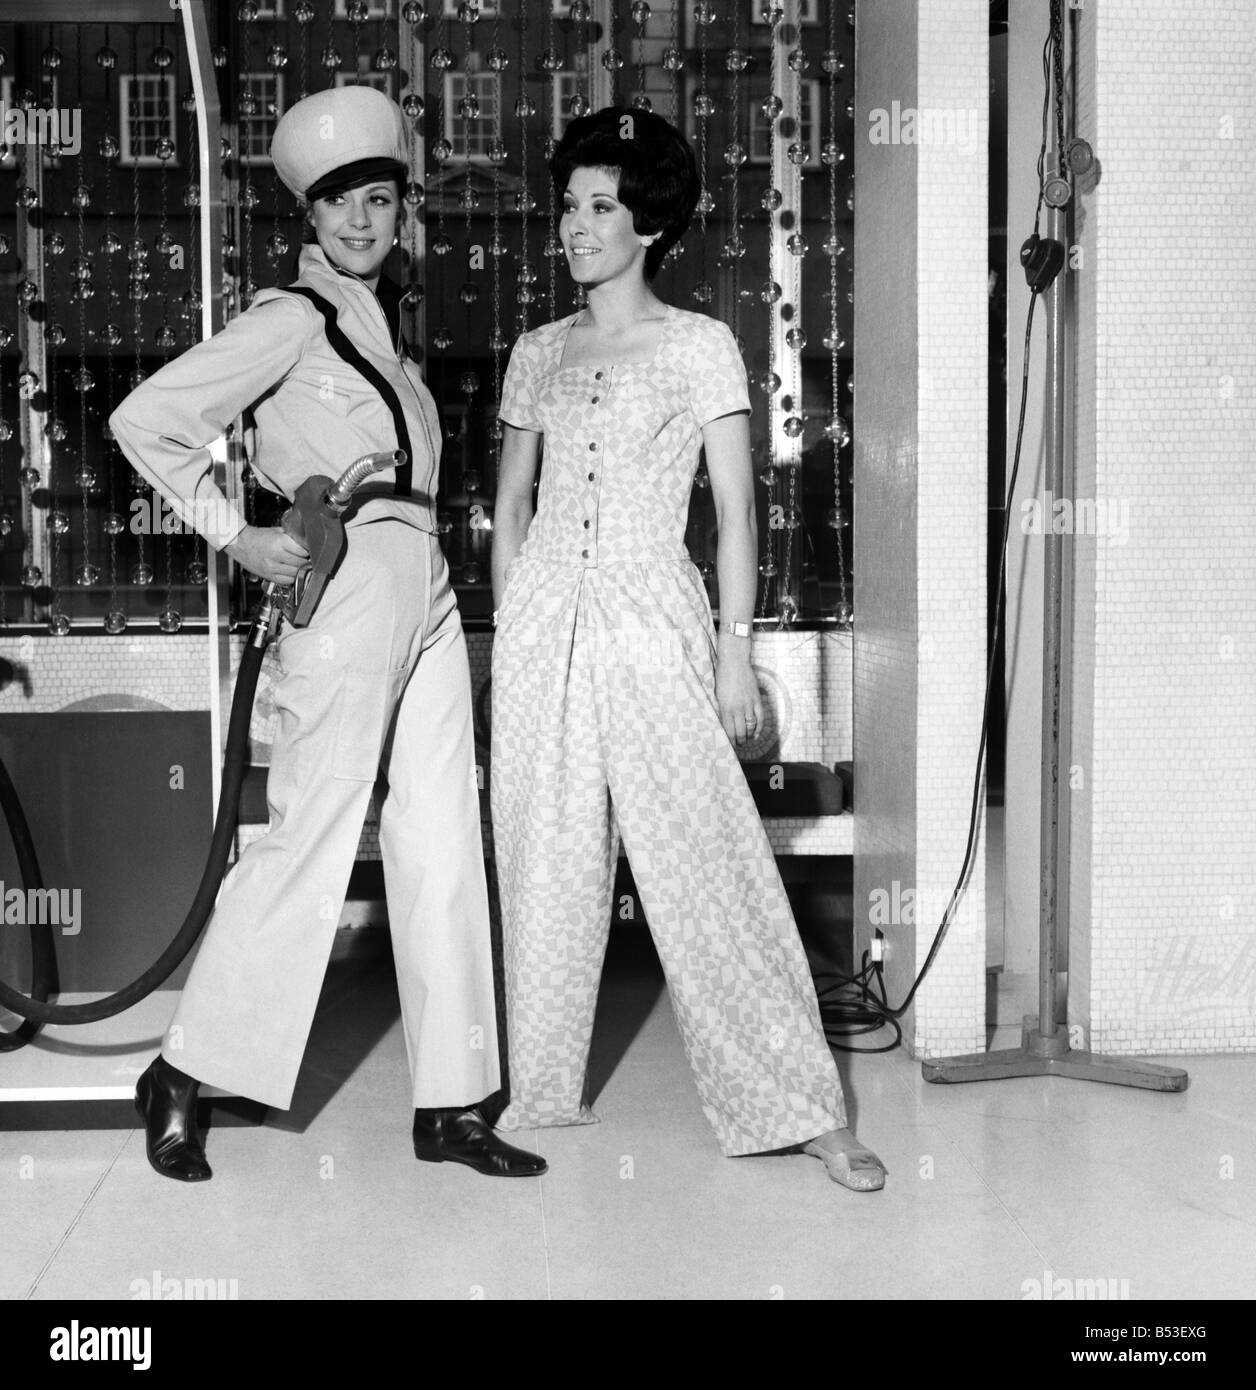 El Cavendish Hotel en Mayfair, Dupont mostró Teddy Tinling diseñado carrera ropa de los 70's. (De izquierda derecha) Penny Carter como un Fotografía de stock - Alamy